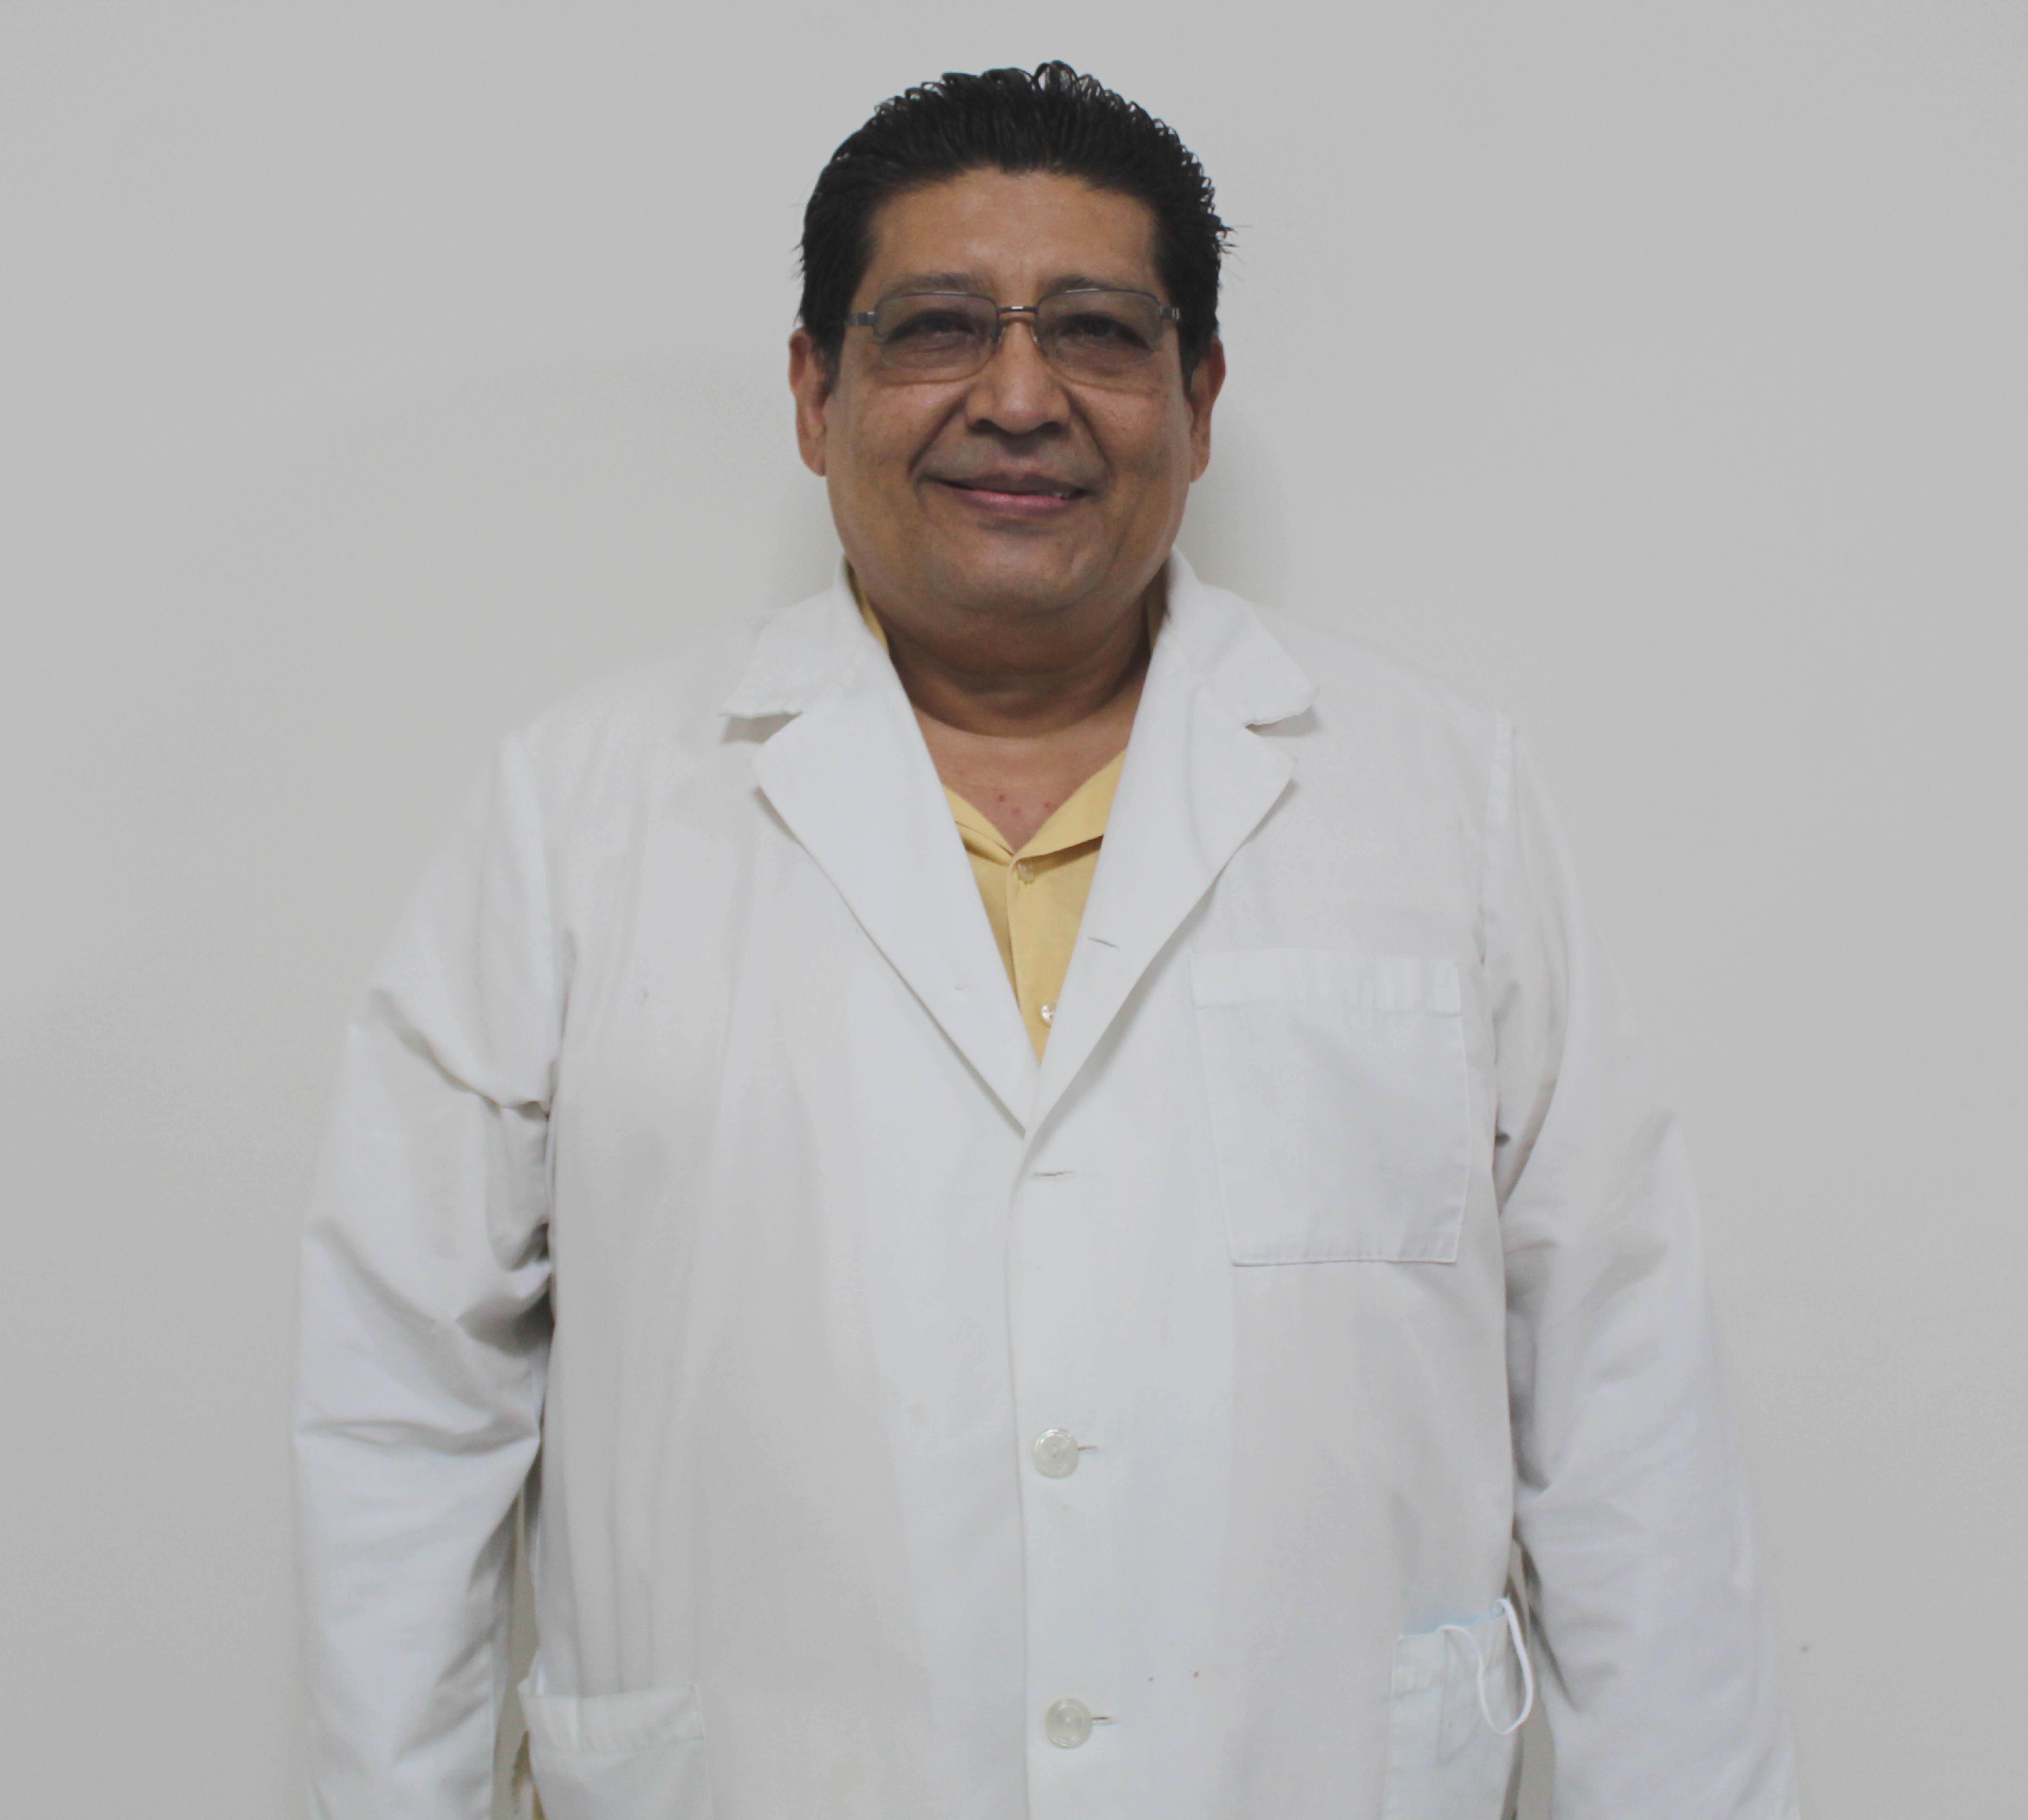 Dr. Manuel